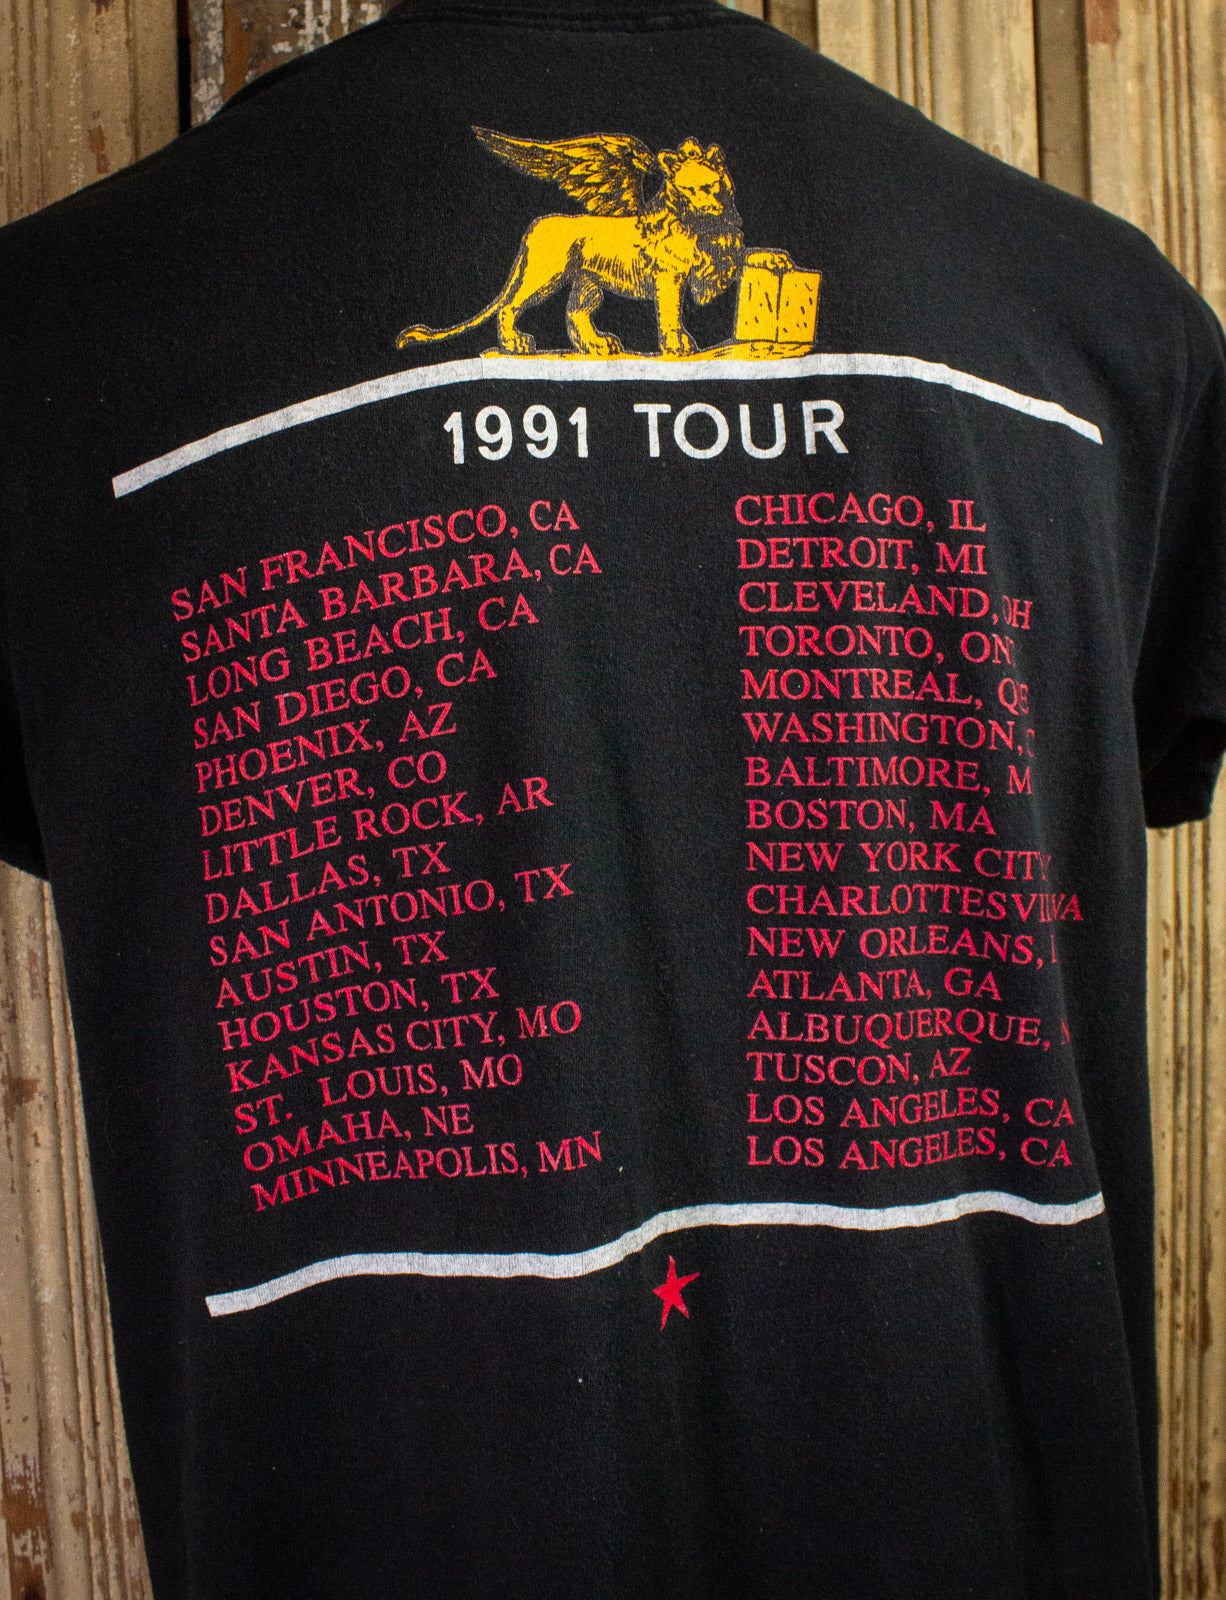 Vintage Tribe After Tribe Tour Concert T Shirt 1991 Black Large